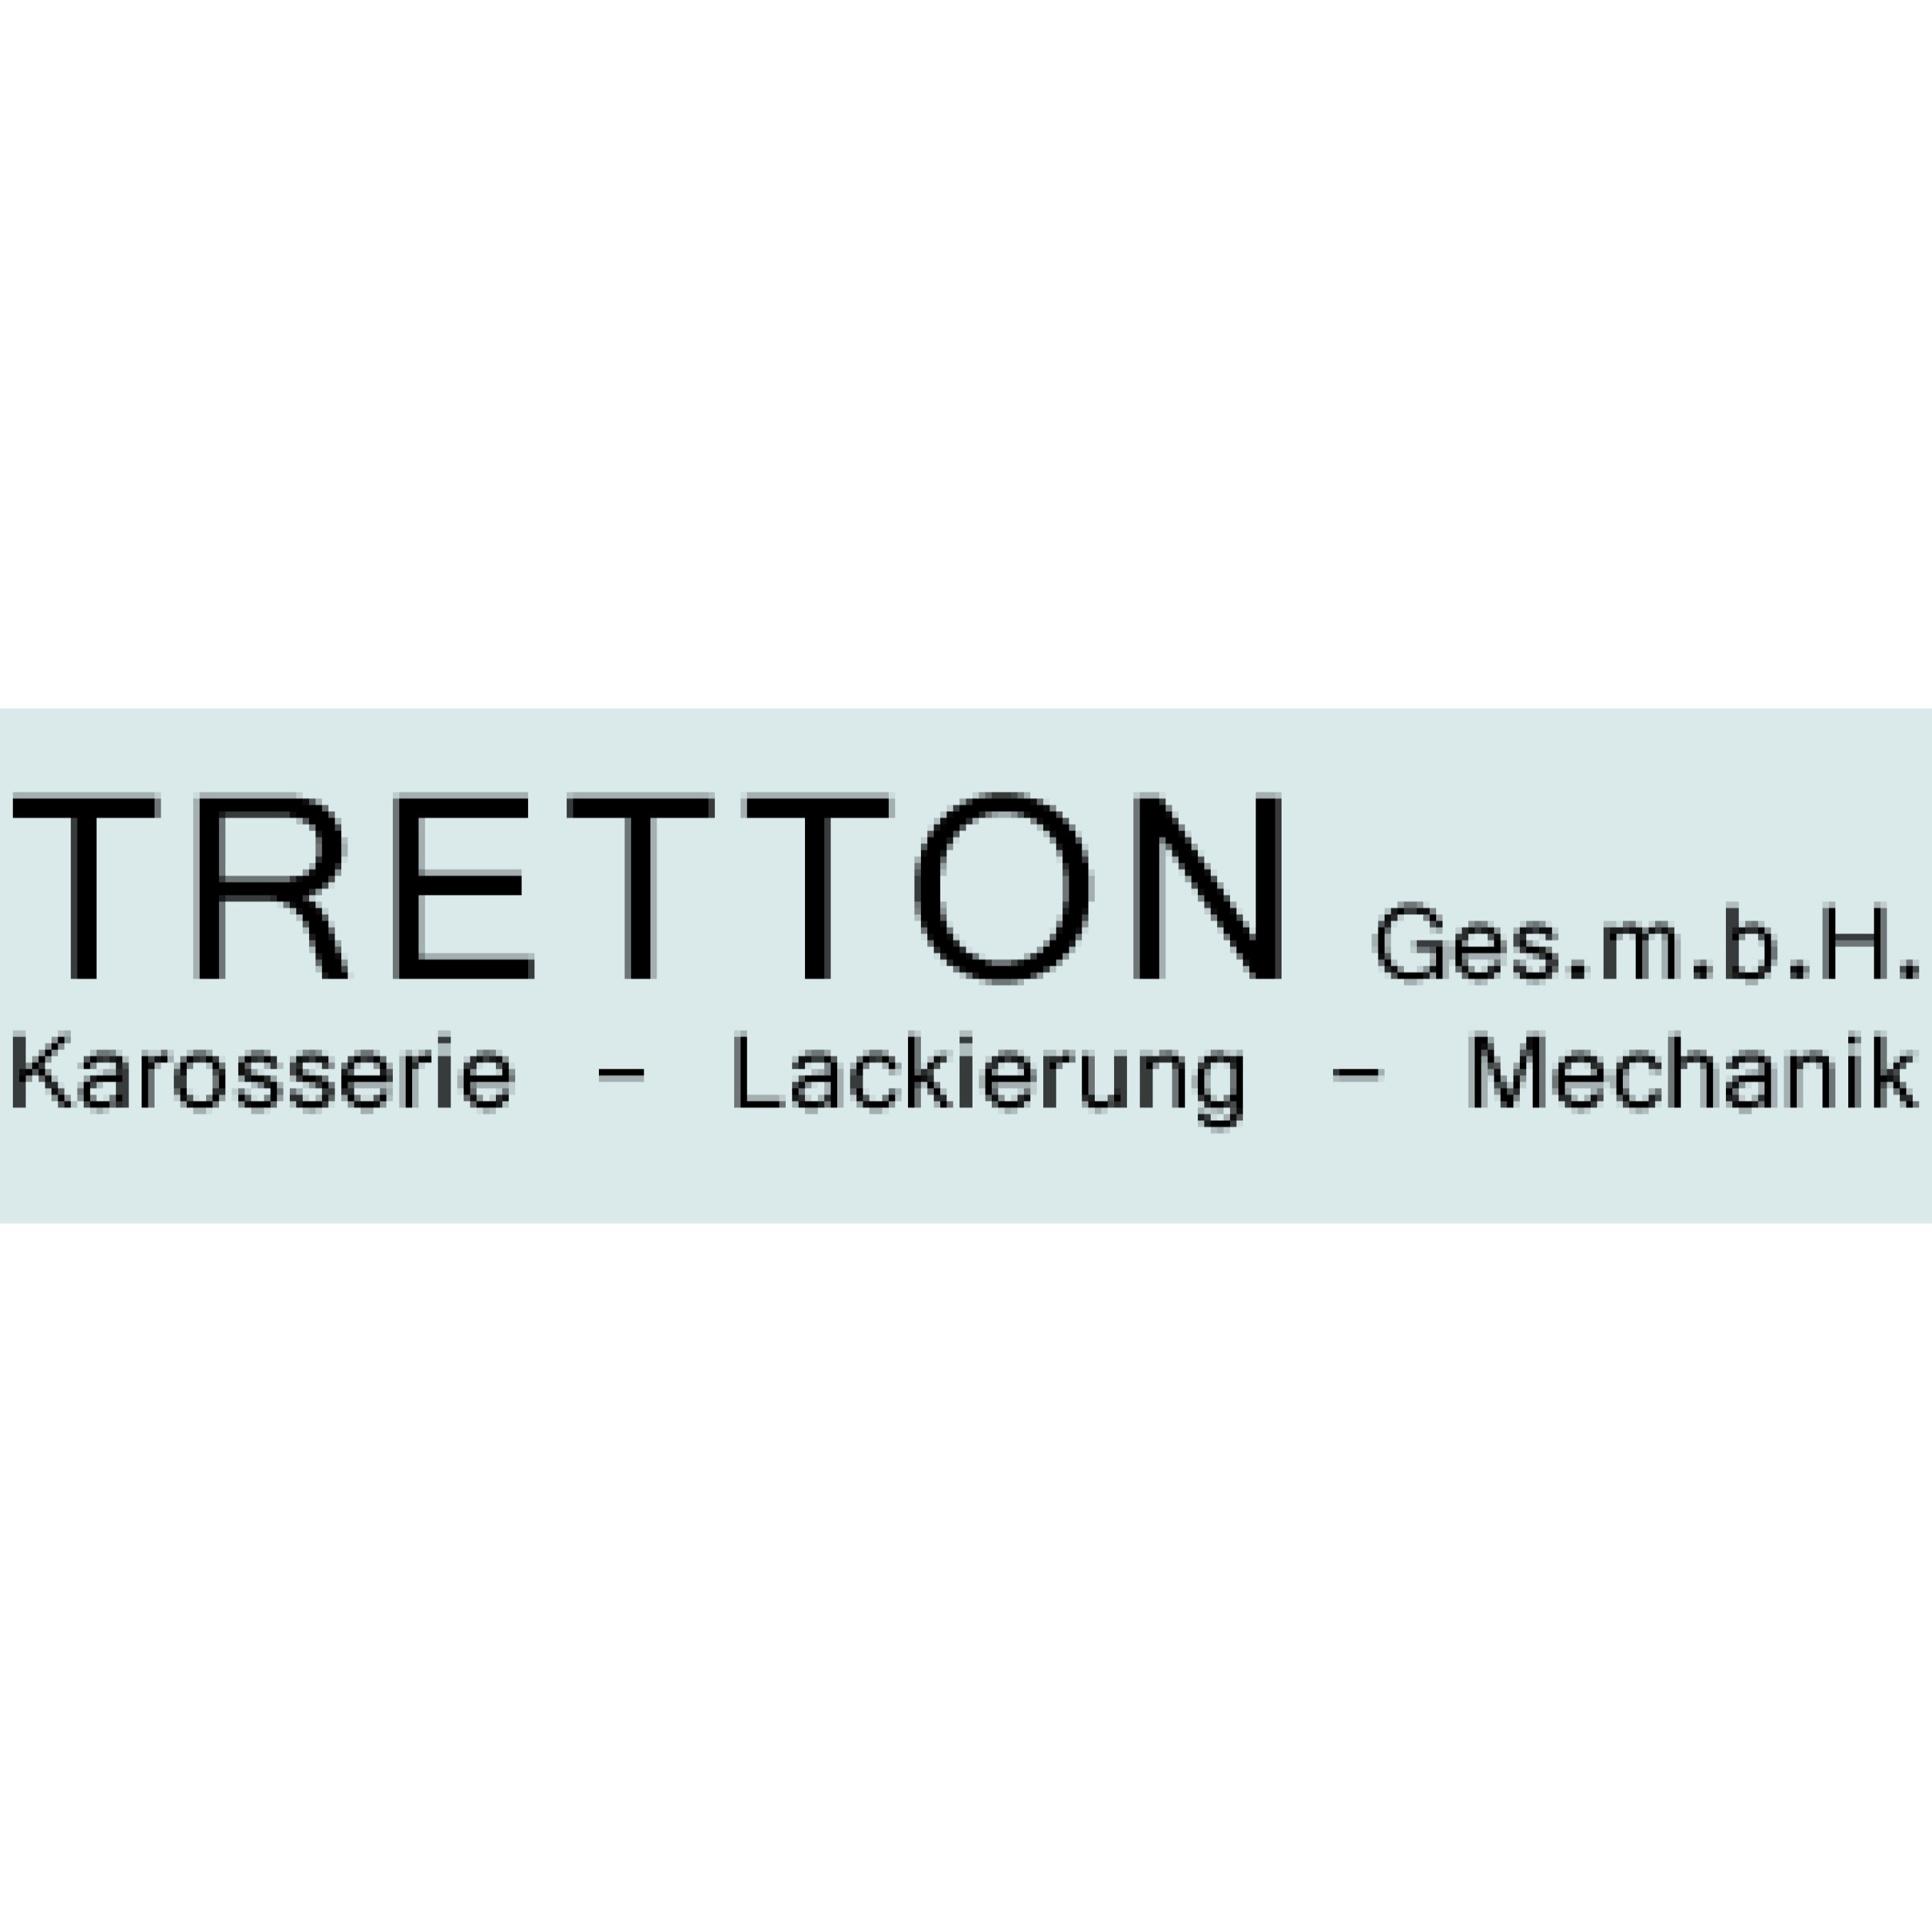 Tretton GesmbH - Car Repair And Maintenance Service - Wien - 01 6885151 Austria | ShowMeLocal.com